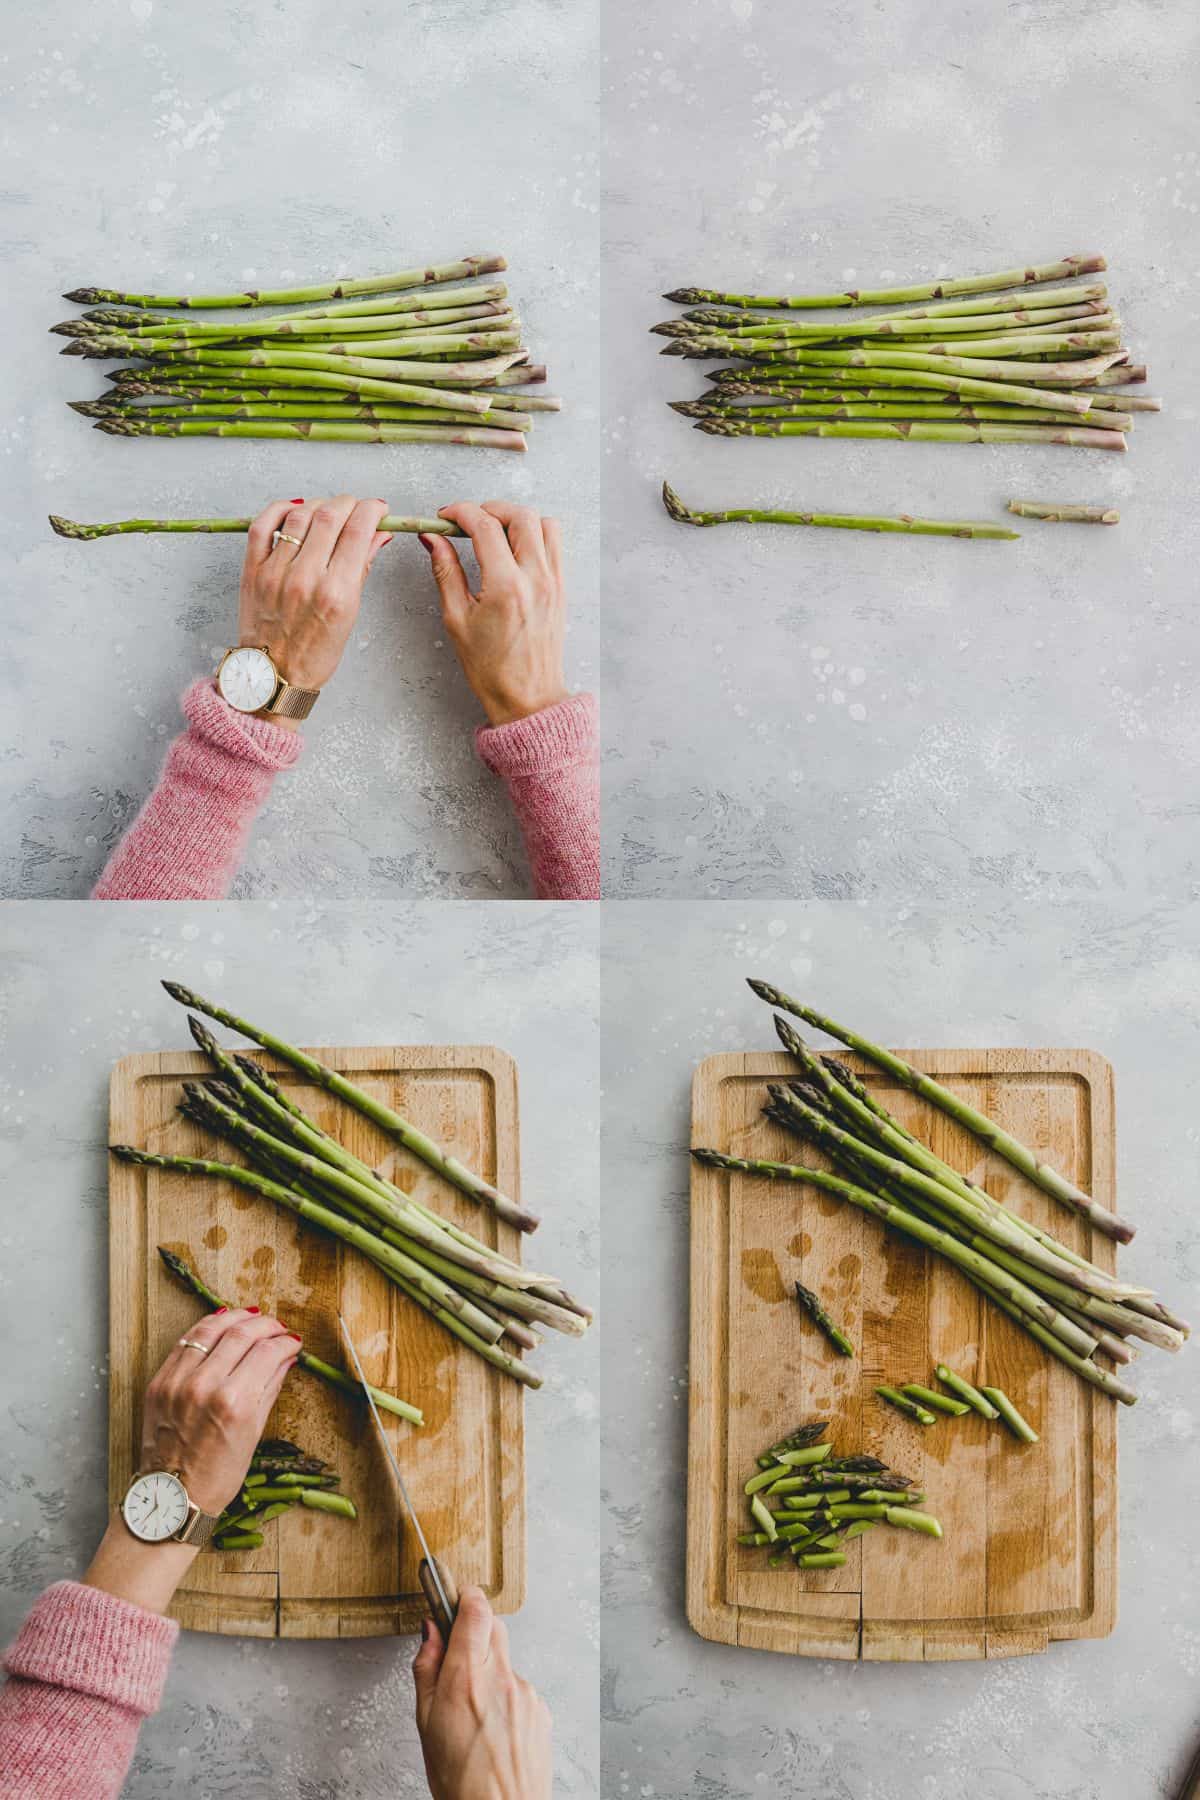 Asparagus Pasta Salad Recipe Step 1-4